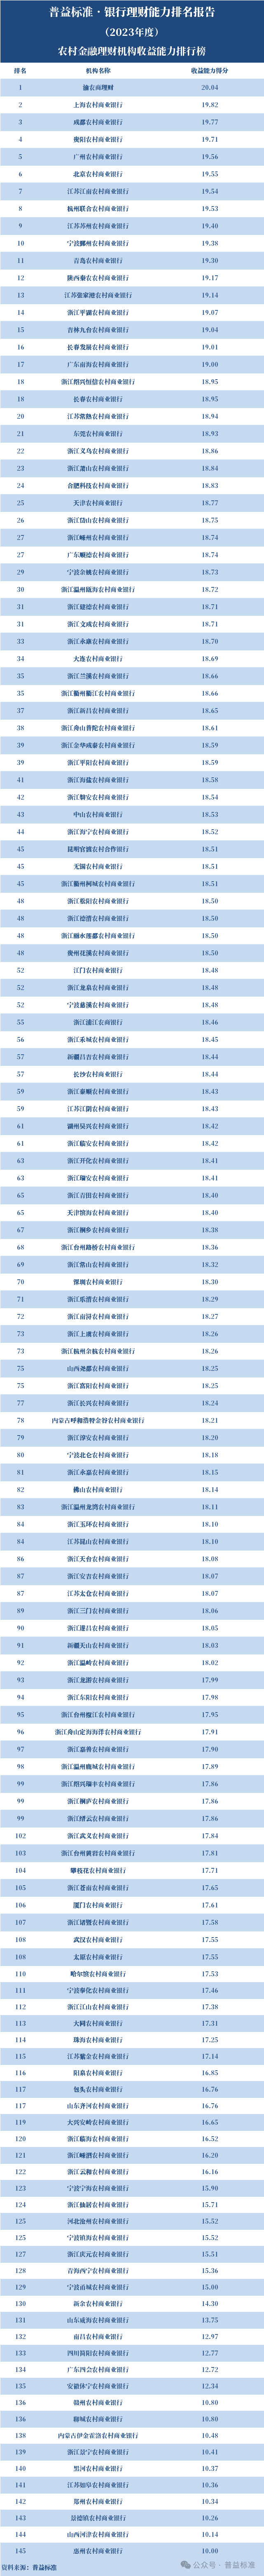 能力排名农村金融理财机构排名前十的依次为渝农商理财,上海农商银行